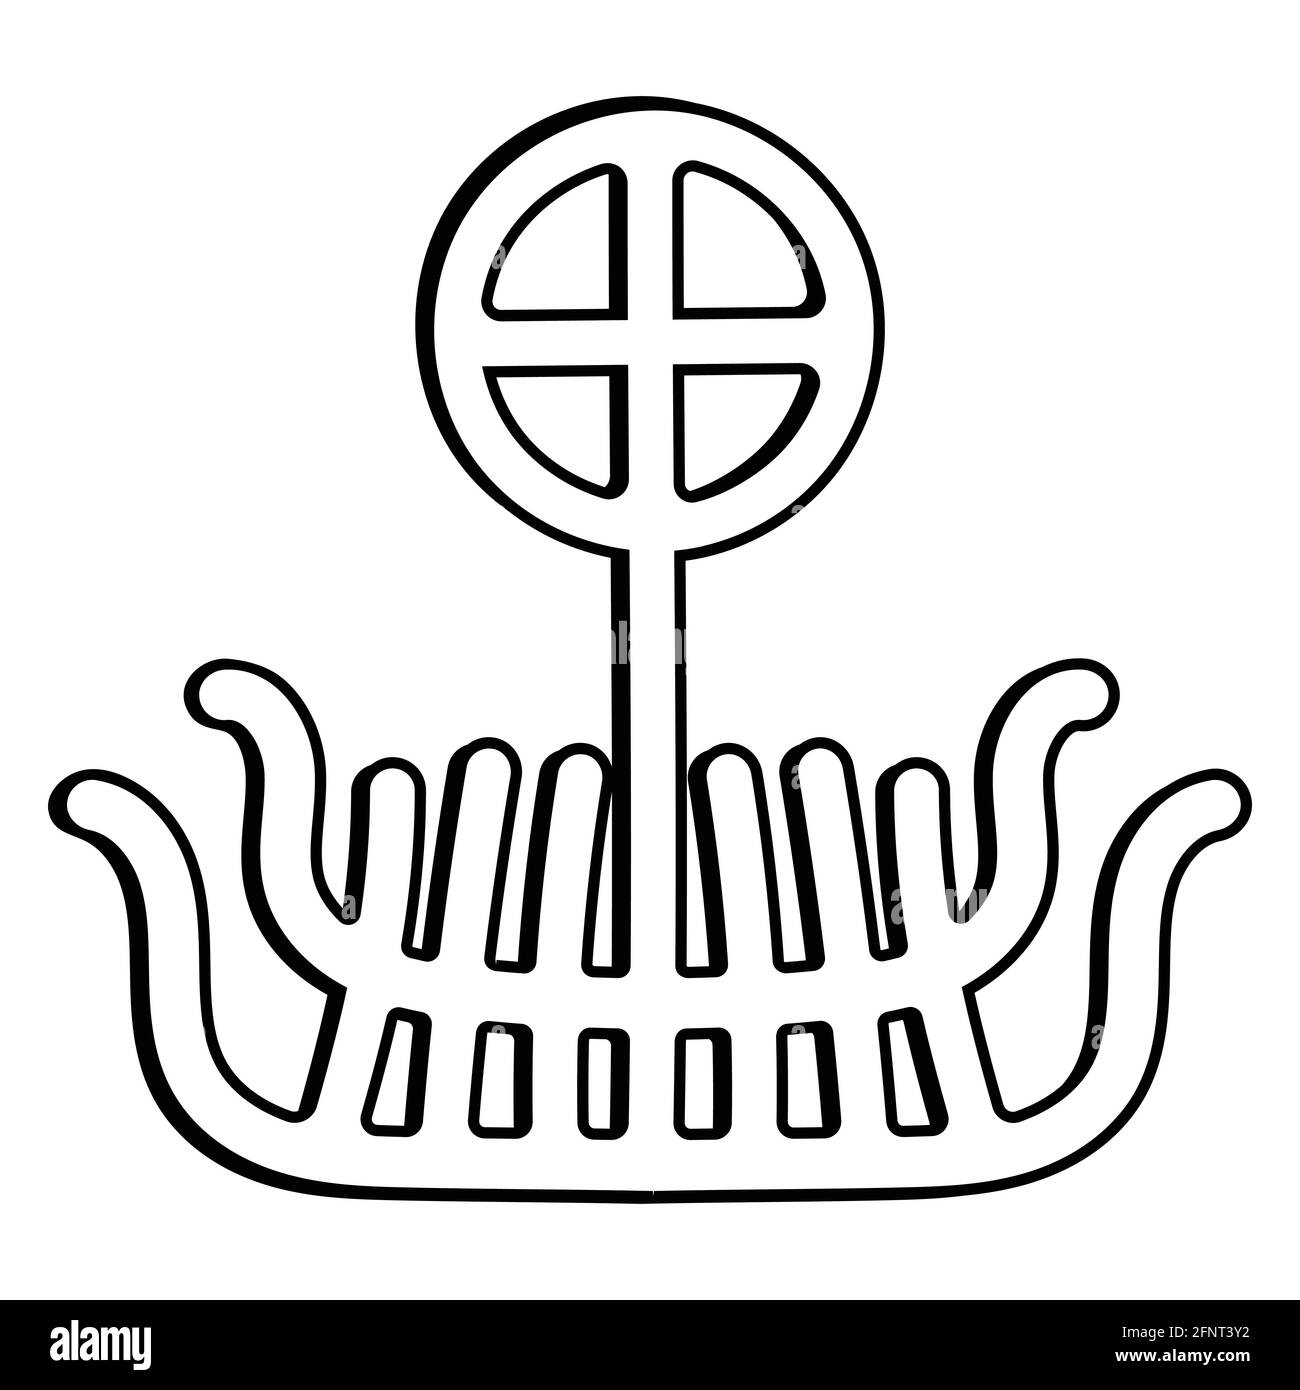 Une ancienne image scandinave d'un navire viking Drakkar, isolé sur une illustration vectorielle blanche Illustration de Vecteur